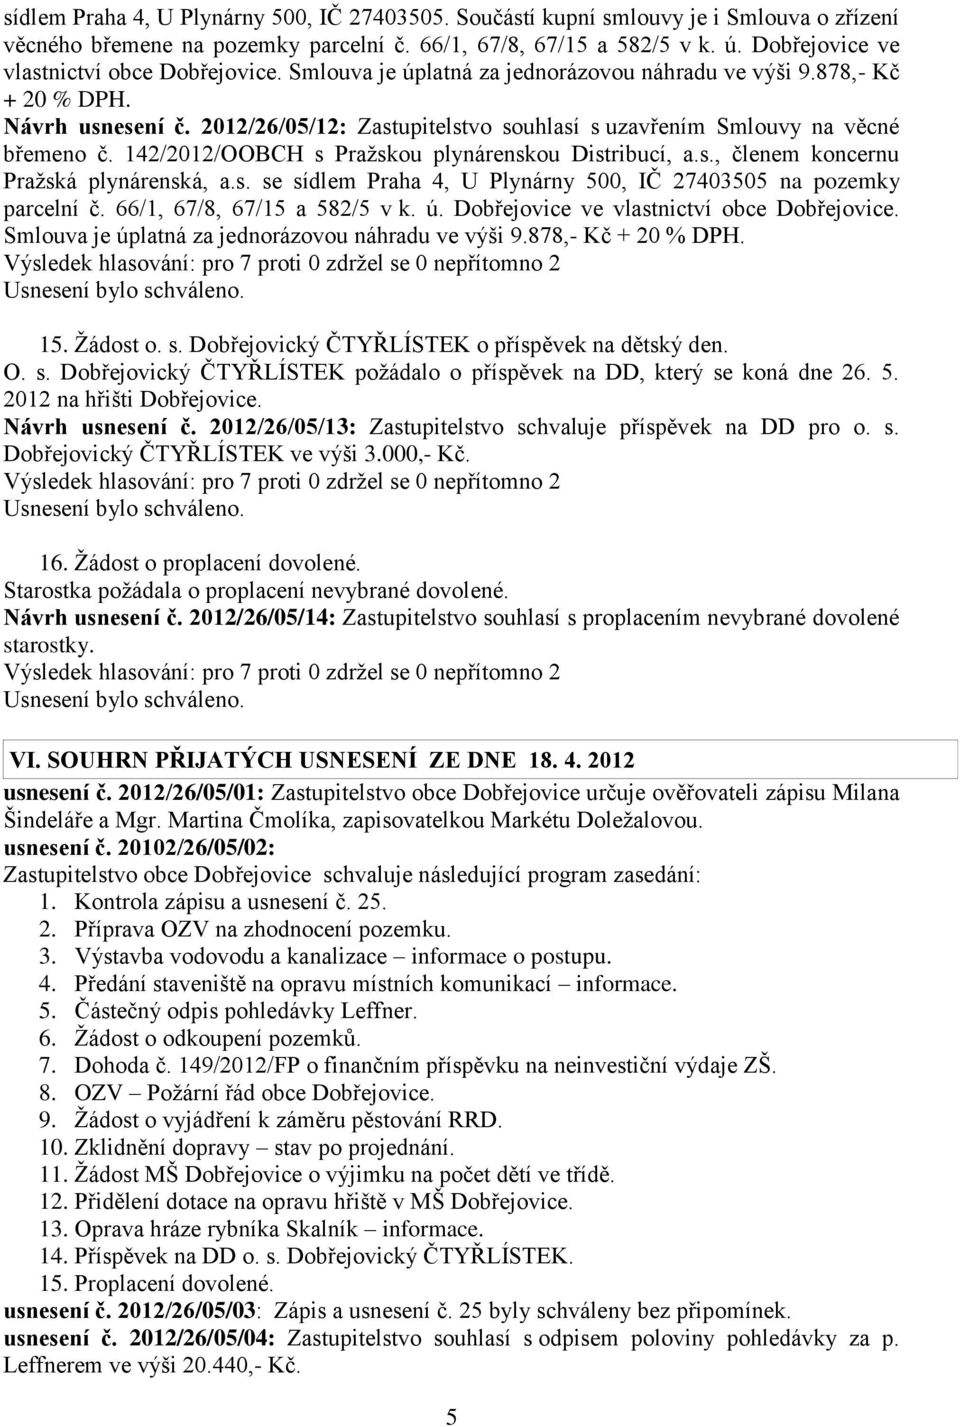 2012/26/05/12: Zastupitelstvo souhlasí s uzavřením Smlouvy na věcné břemeno č. 142/2012/OOBCH s Pražskou plynárenskou Distribucí, a.s., členem koncernu Pražská plynárenská, a.s. se sídlem Praha 4, U Plynárny 500, IČ 27403505 na pozemky parcelní č.